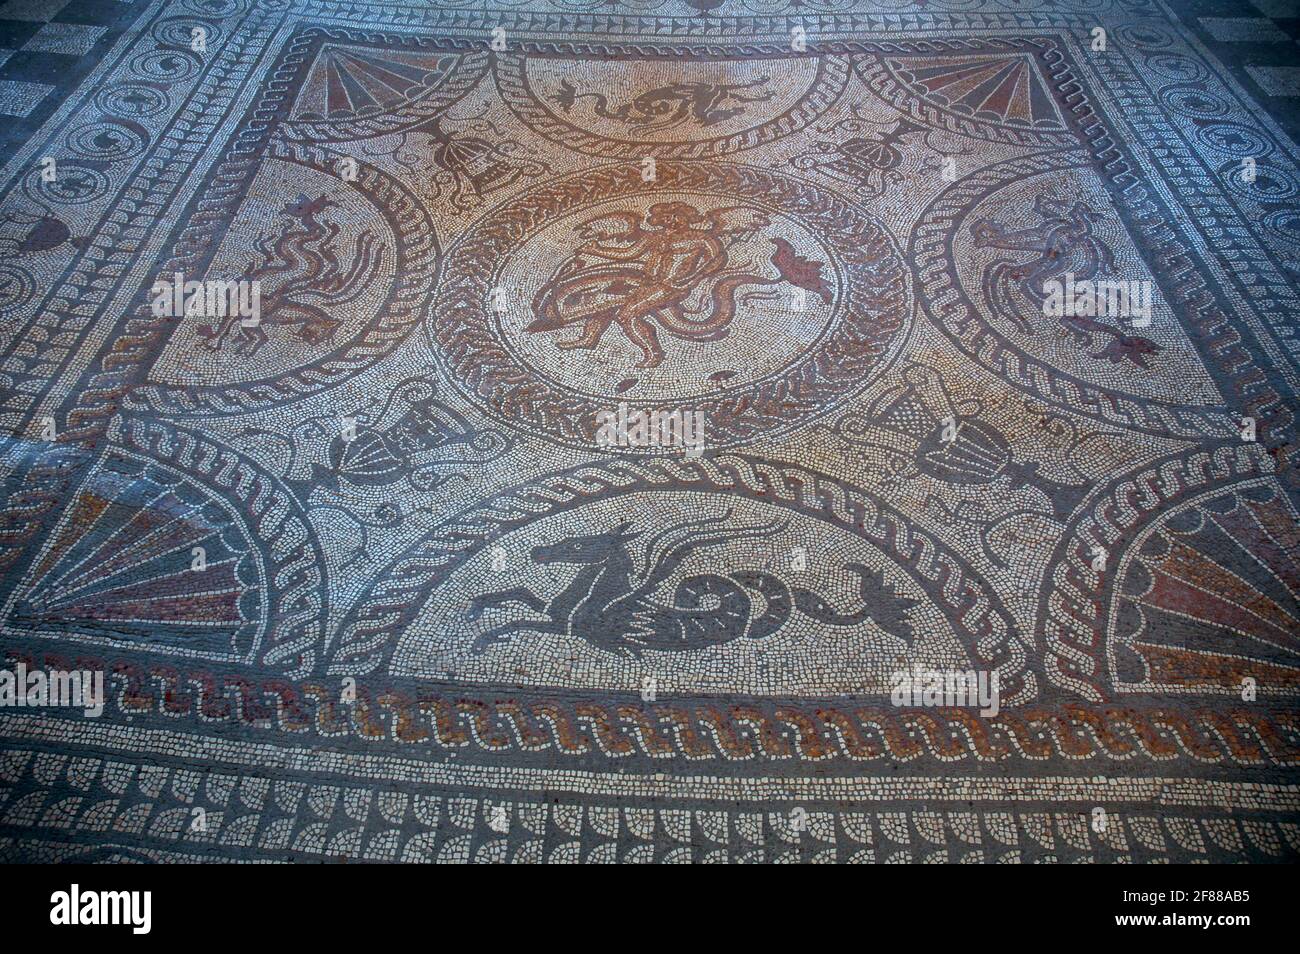 Le plus beau des mosaïques du palais romain de Fishbourne, Chichester, West Sussex. Autour de AD 160 dans l'une des salles à manger. Cupid et Dolphin au centre Banque D'Images